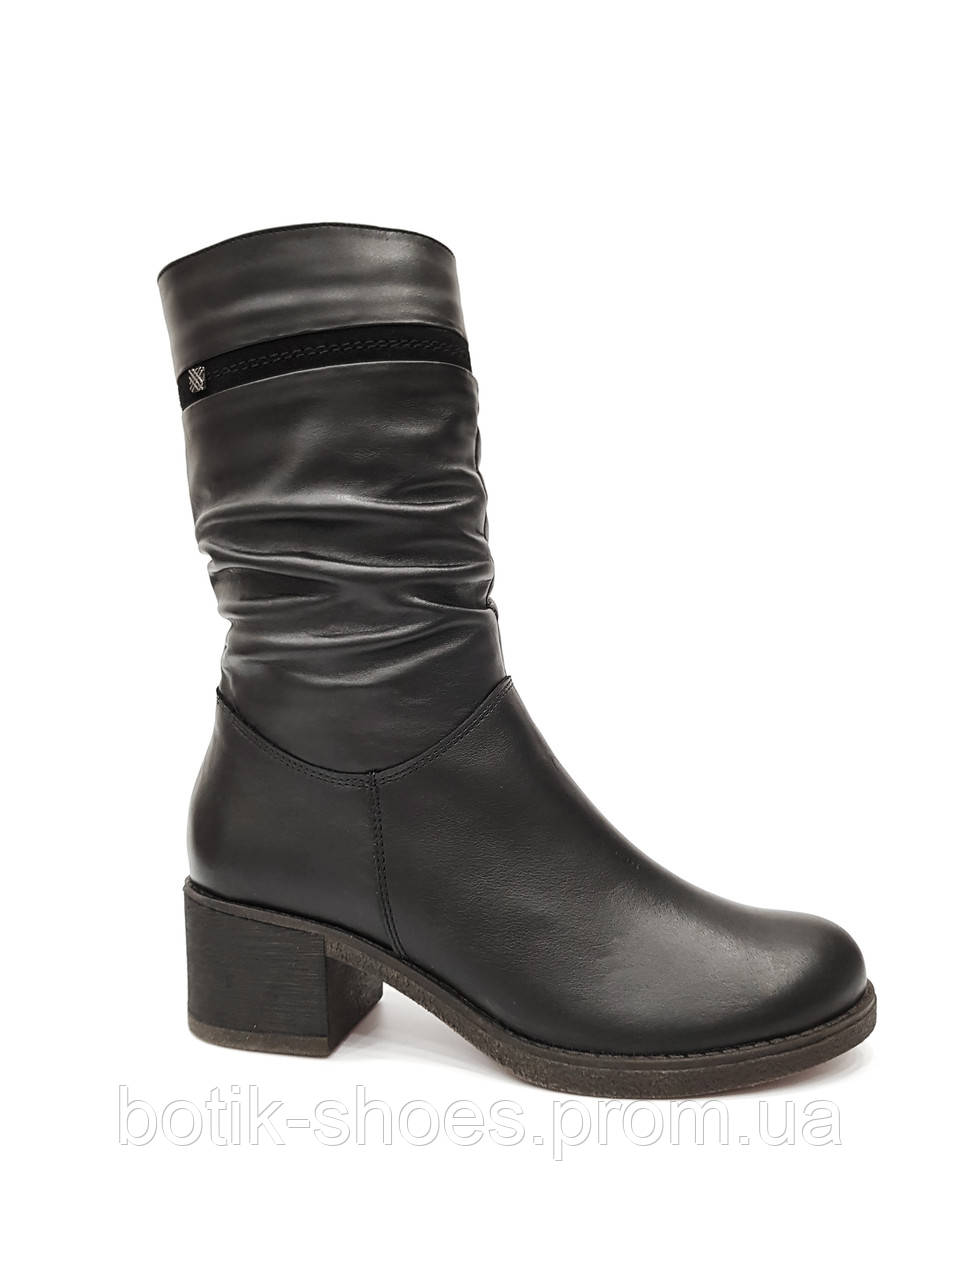 Жіночі шкіряні черевики напівчобітки зимові з хутром на низькому підборі чоботи короткі на зиму модні стильні 37 розмір Romax 4250